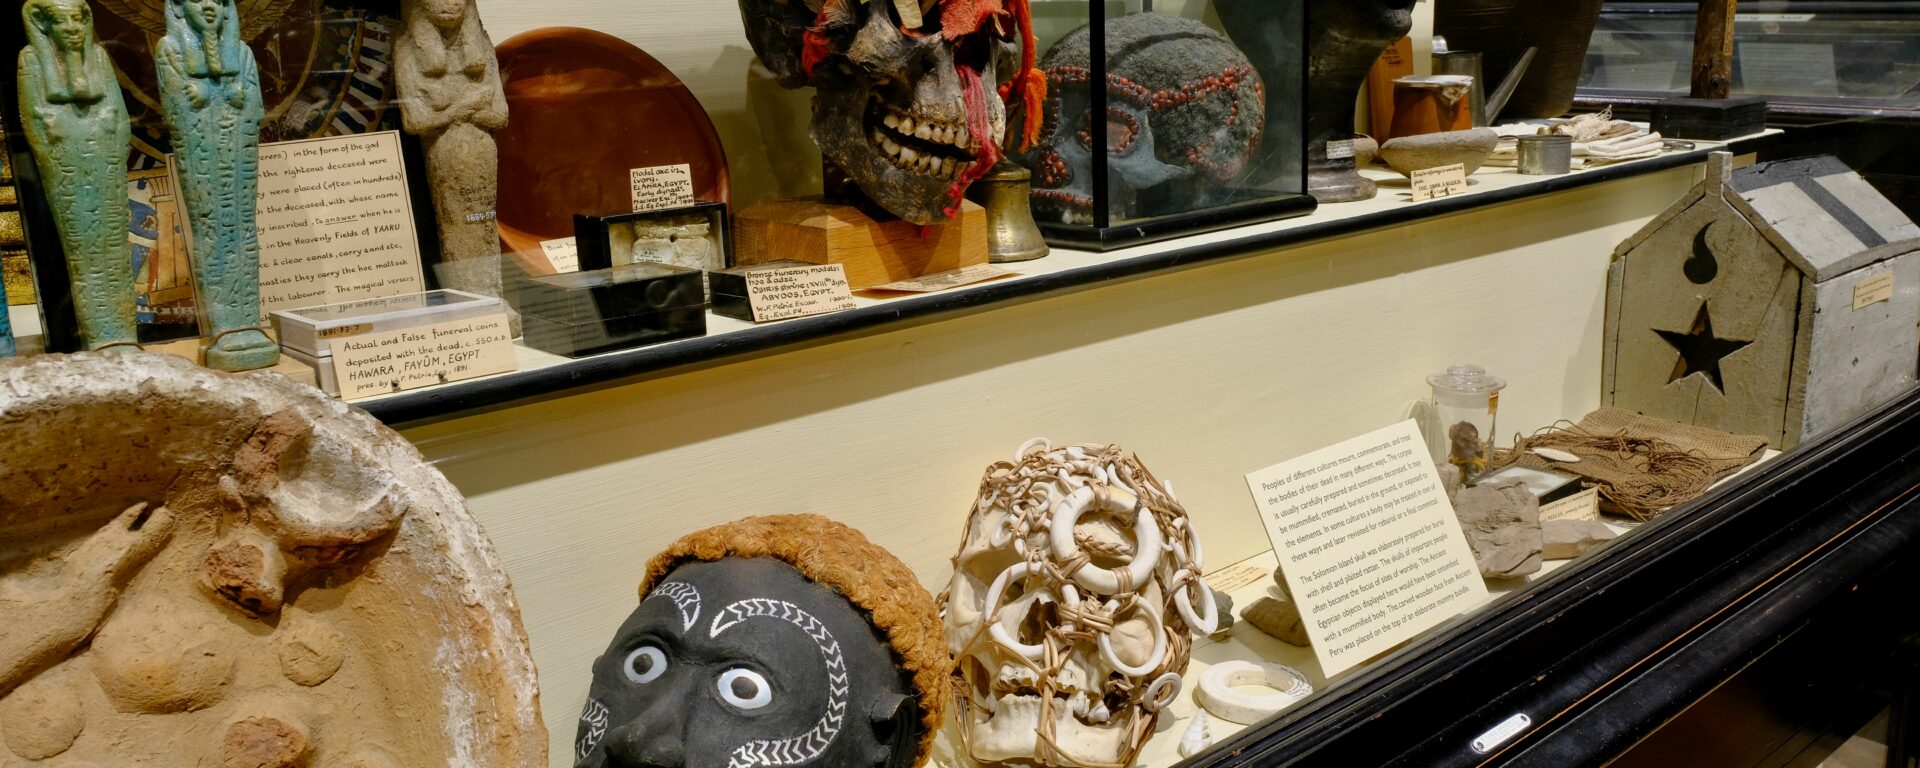 Pitt Rivers skulls